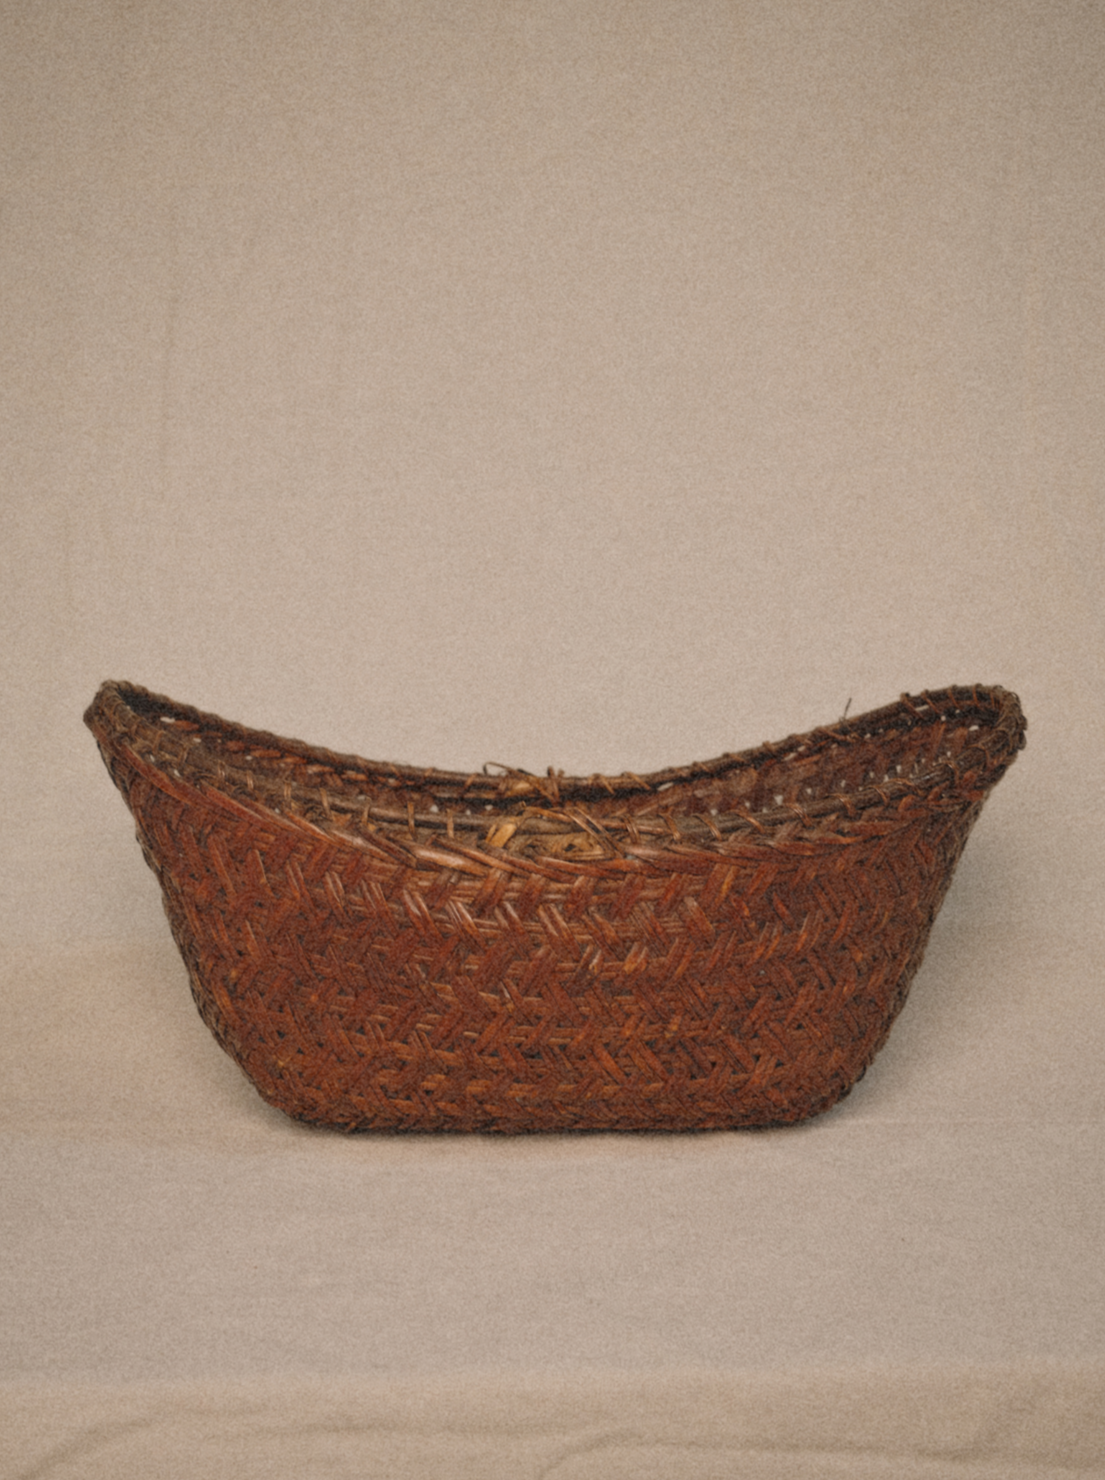 Antique Gathering Basket-Oval